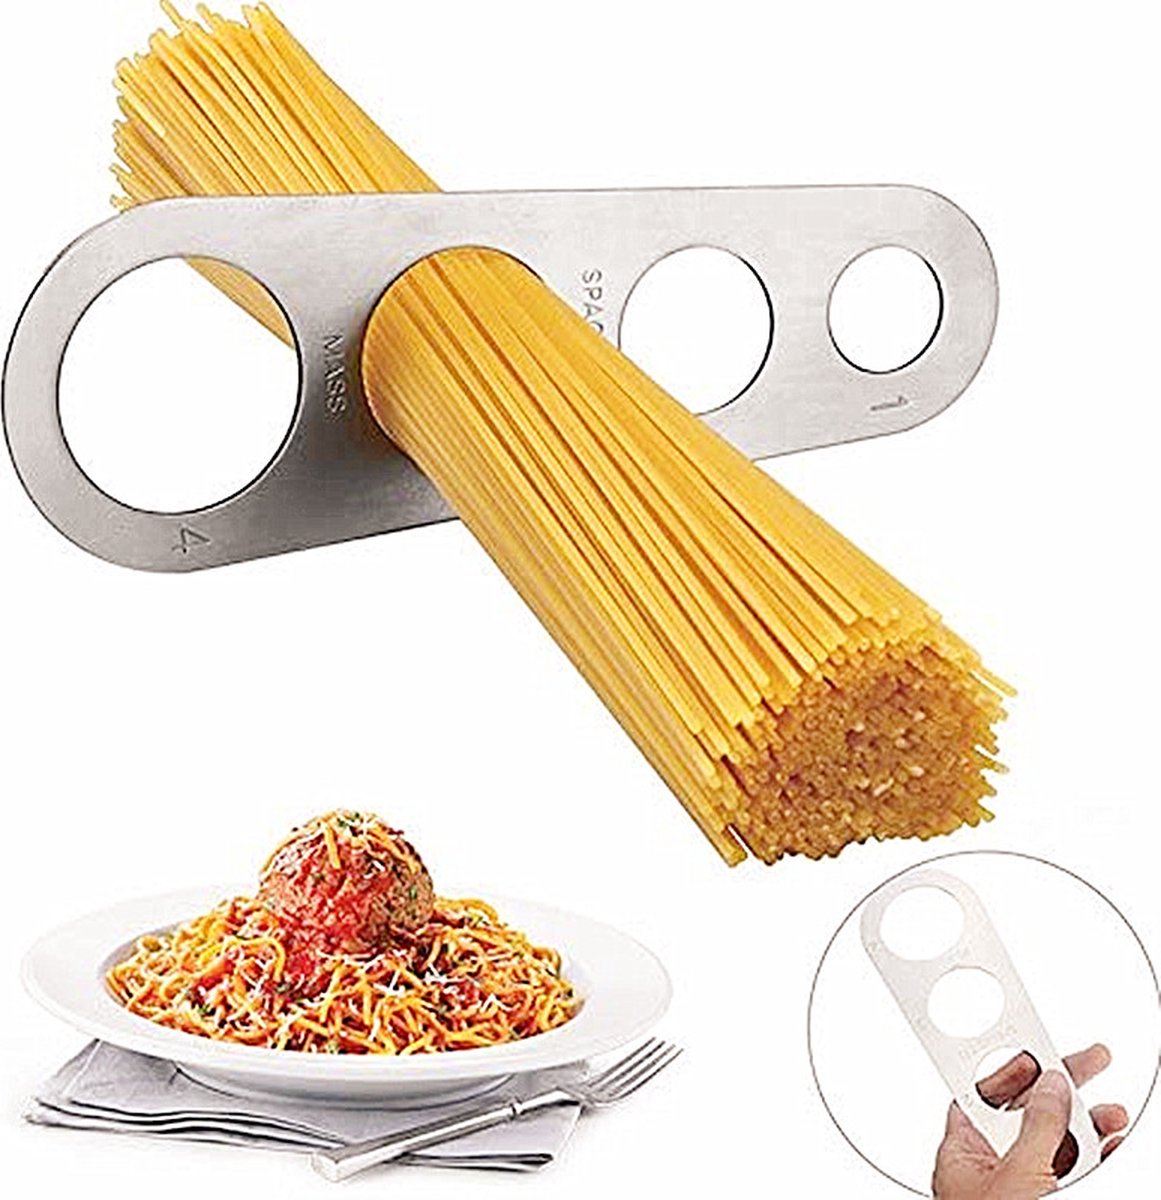 Roestvrijstallen Spaghettimaat I Pasta Snijder I Spaghetti Meter I Spaghetti Portie Meten I Zilver - Cheaperito